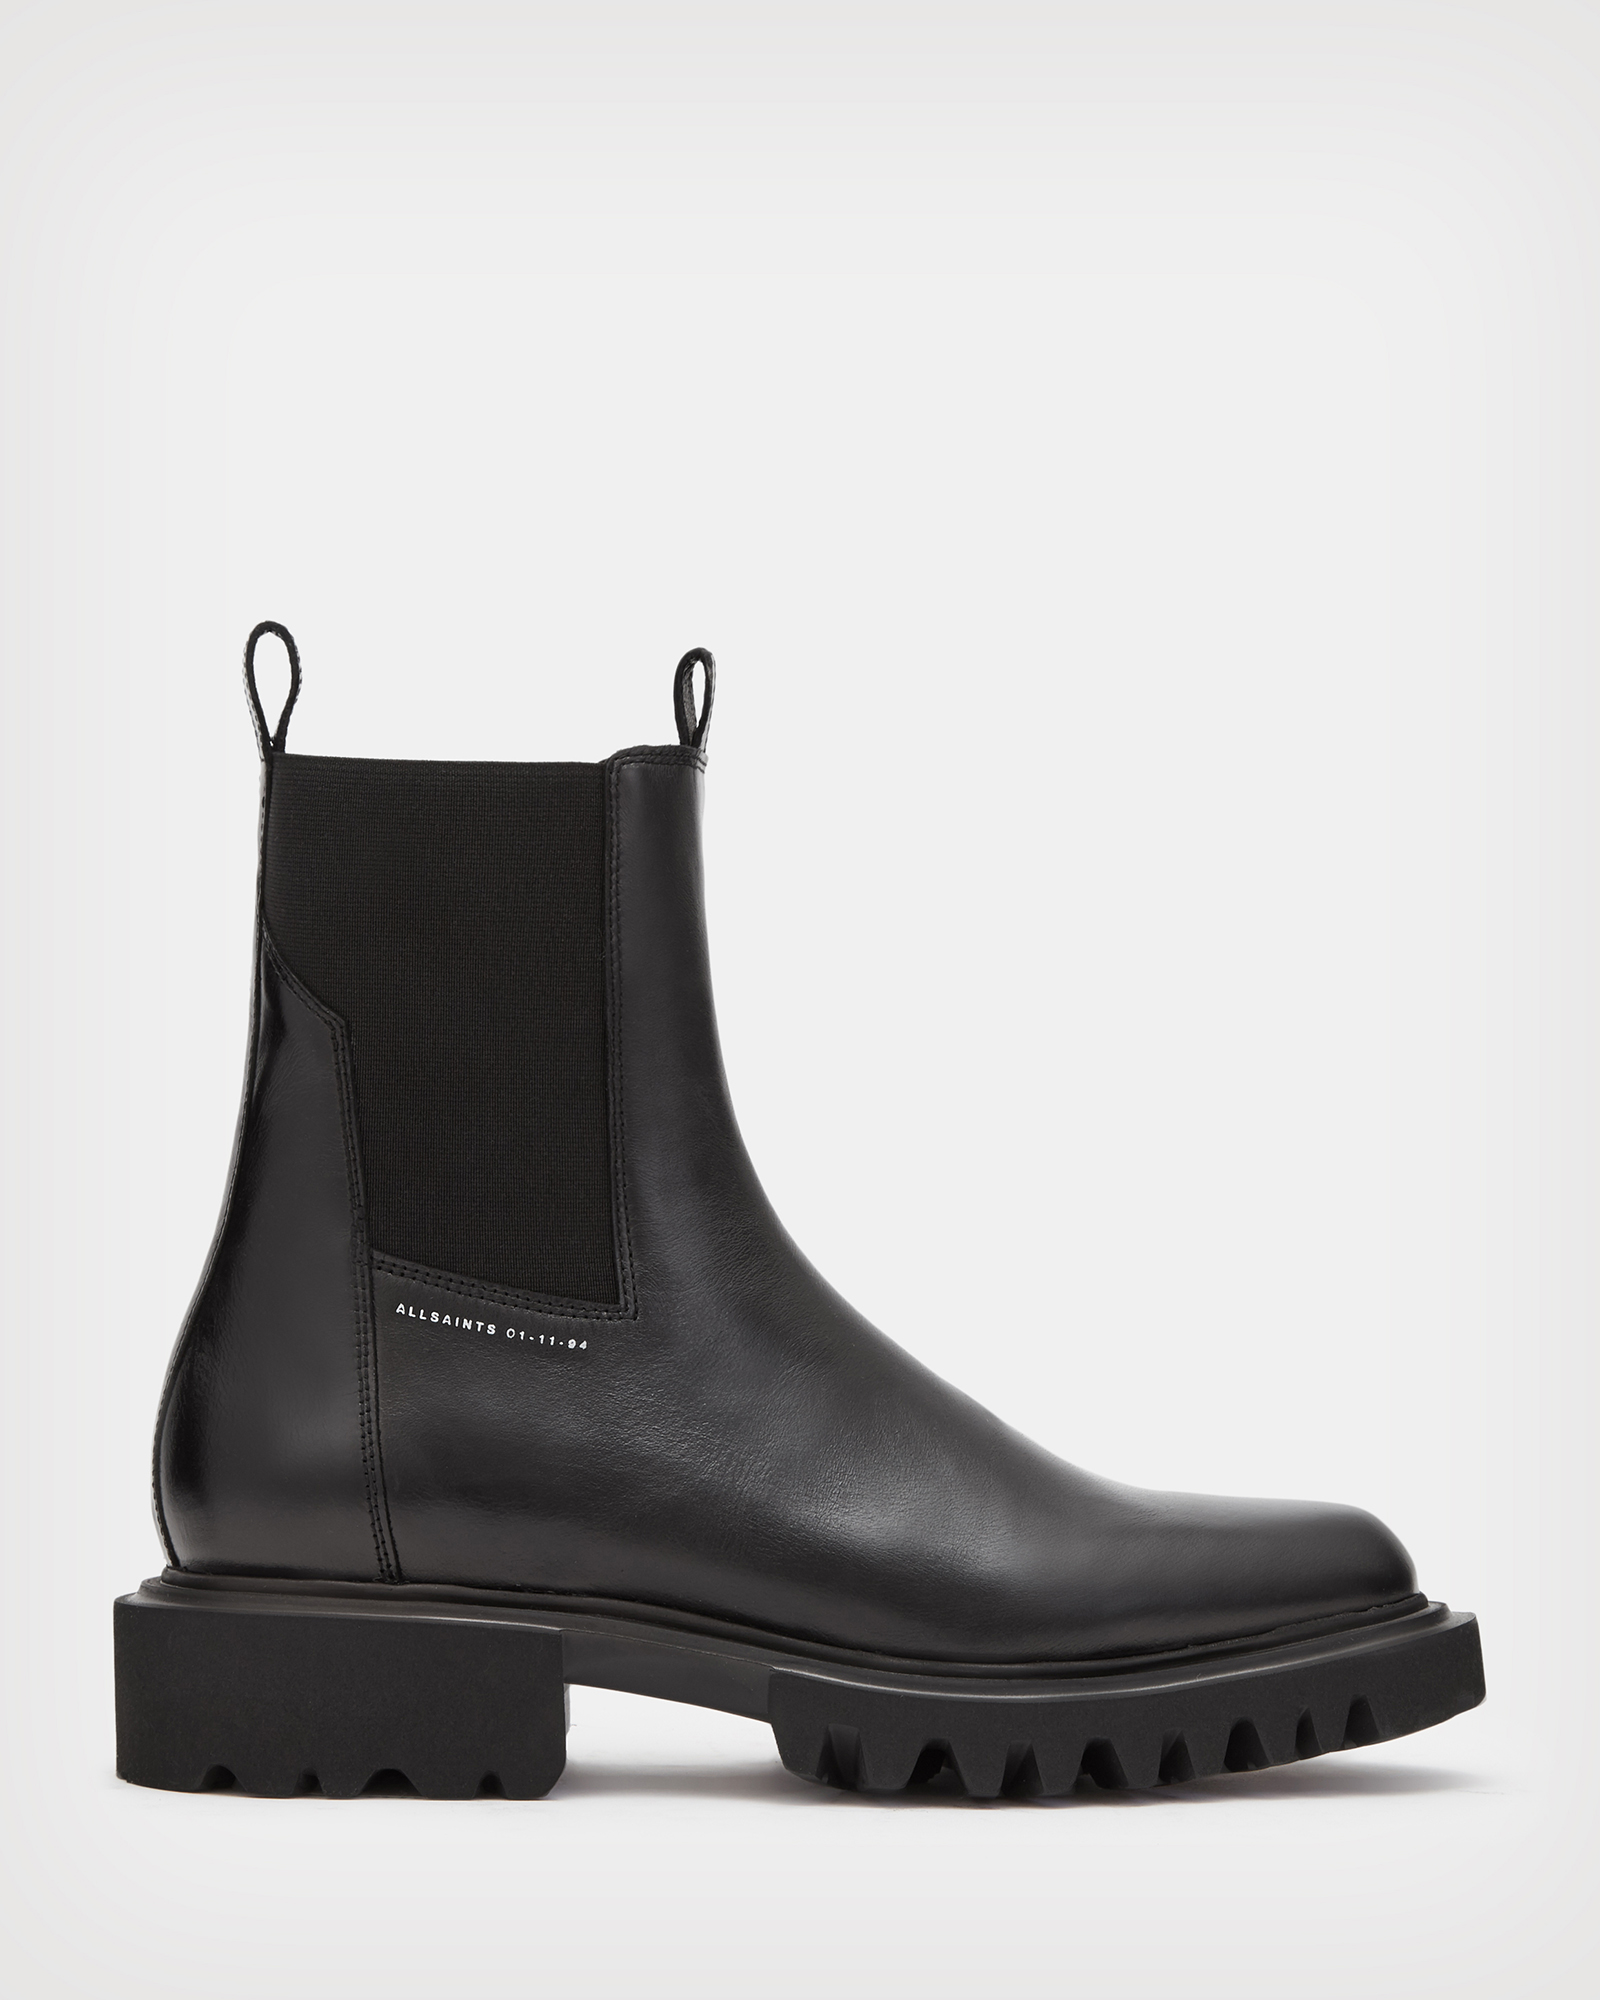 AllSaints Women's Leather Hayley Boots, Black, Size: UK 3/US 6/EU 36